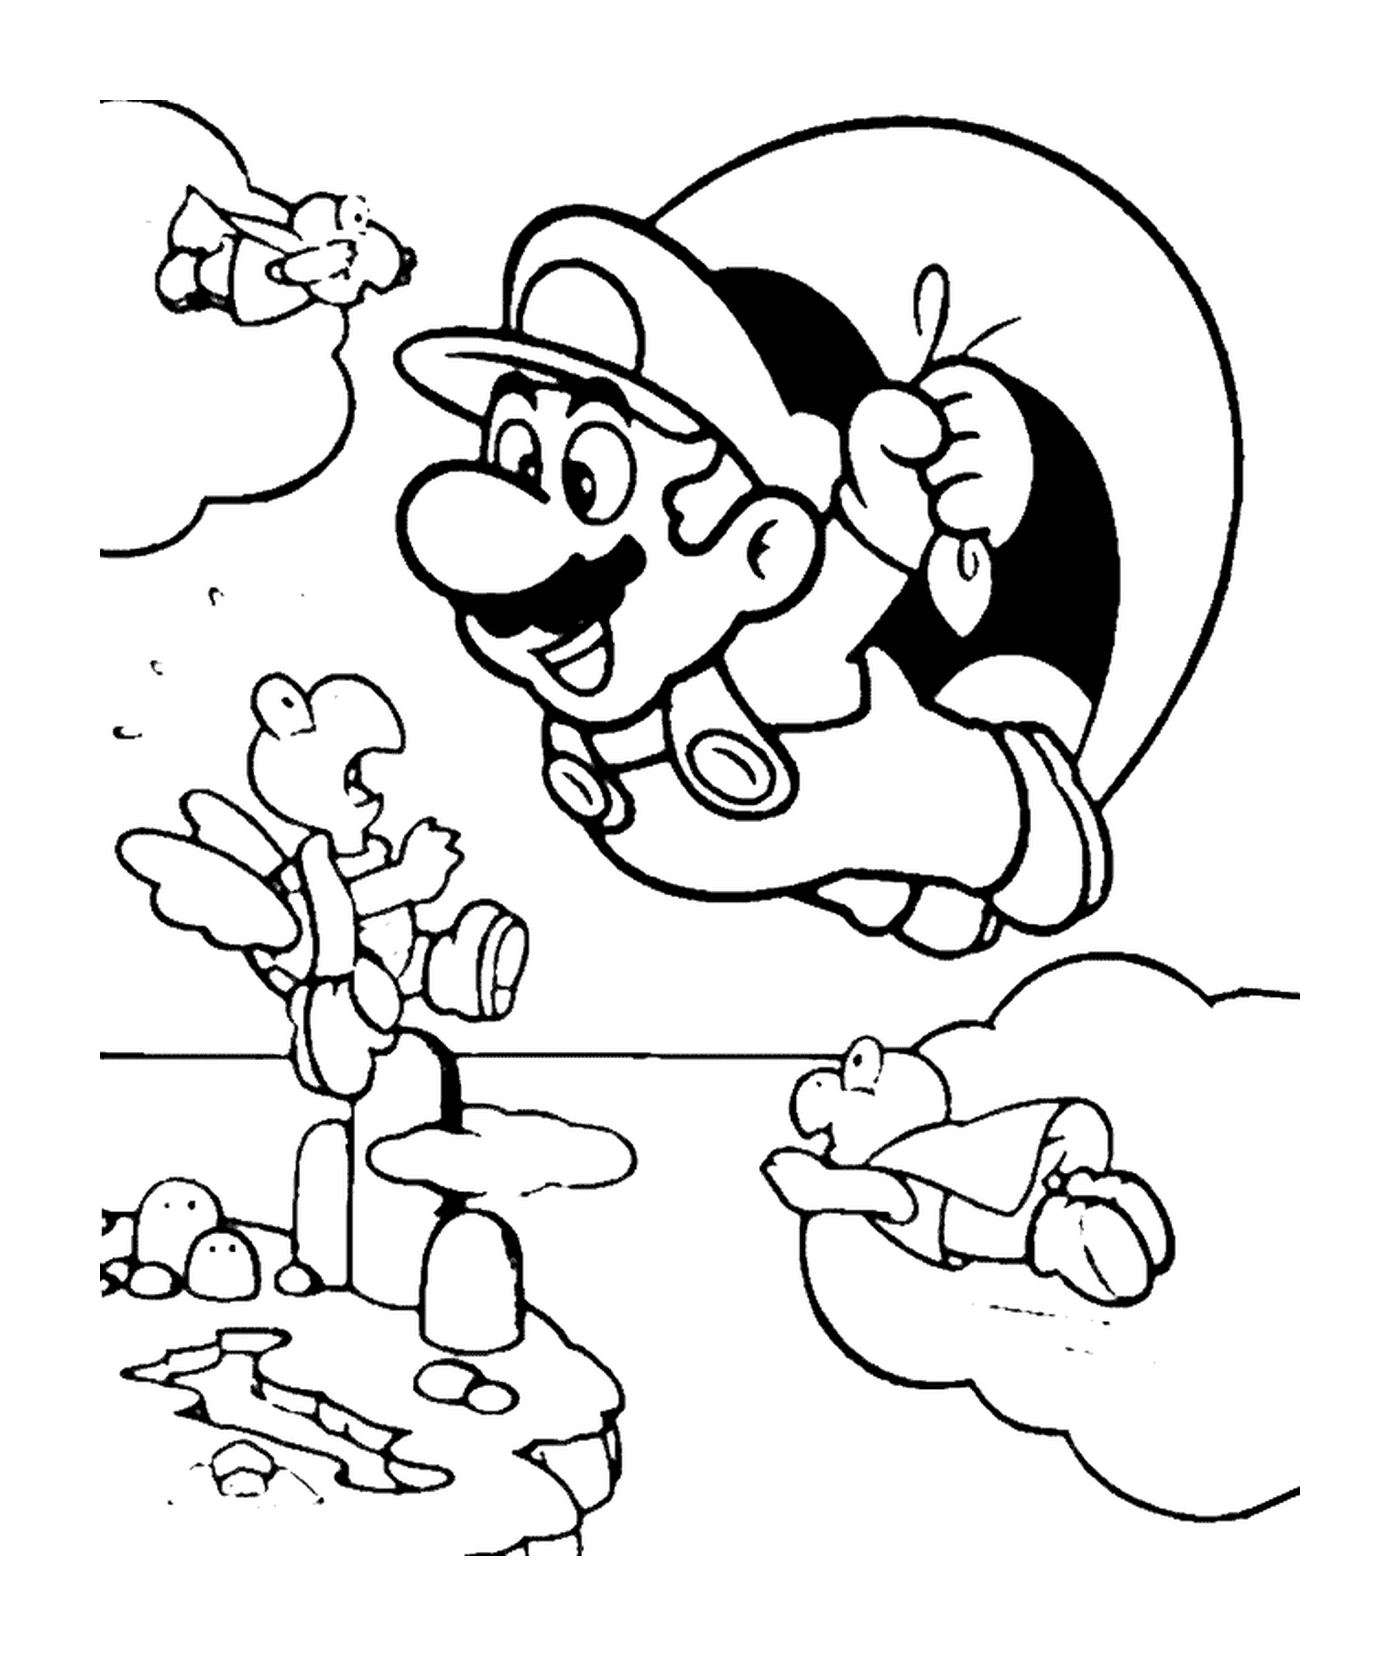  Mario vuela con un paracaídas 